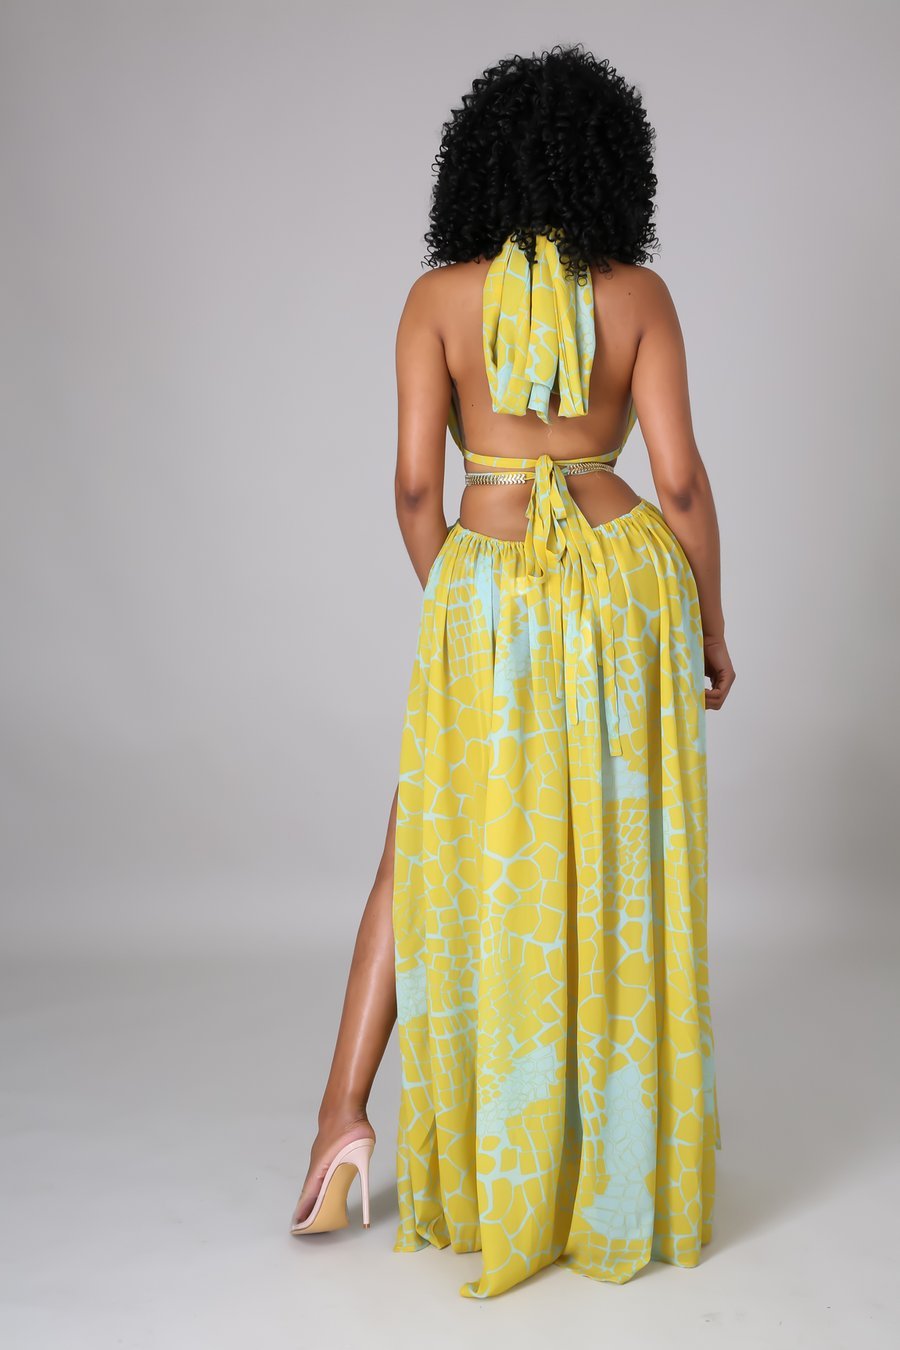 Bora Bora Cutout Maxi Dress Multicolor Yellow - Ali’s Couture 